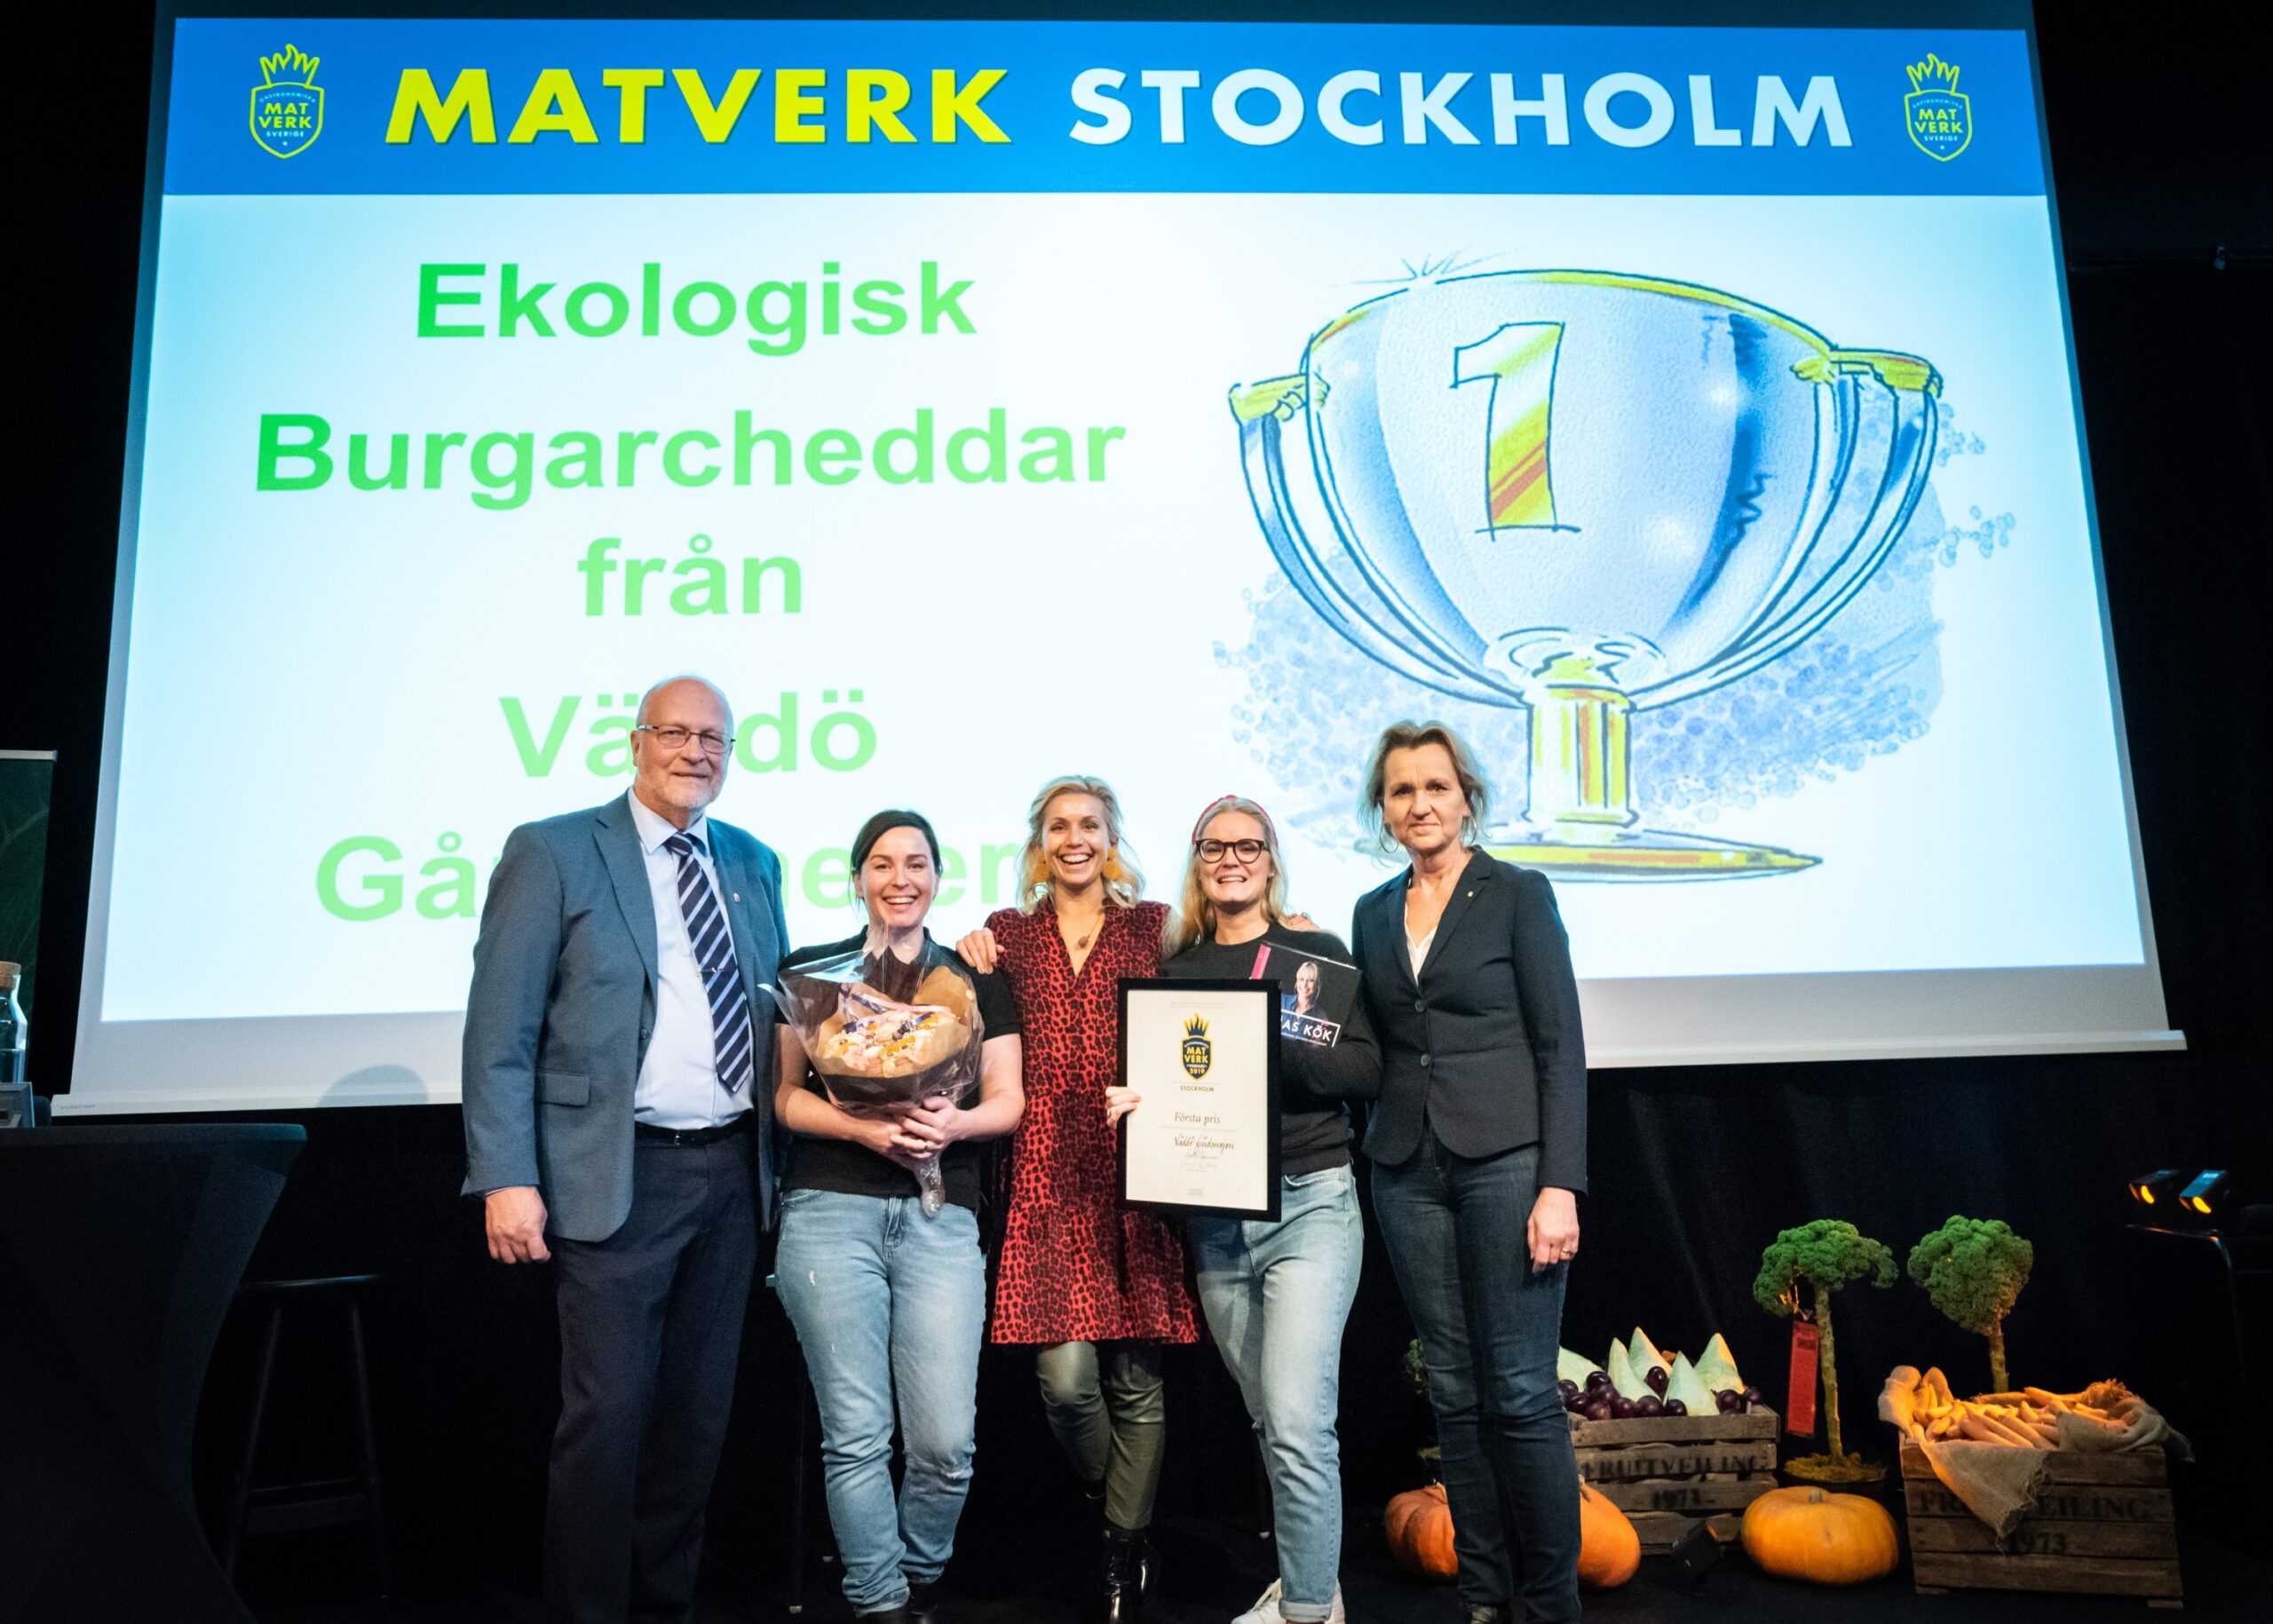 Burgarcheddar från Väddö Gårdsmejeri vinnare av Matverk Stockholm 2019